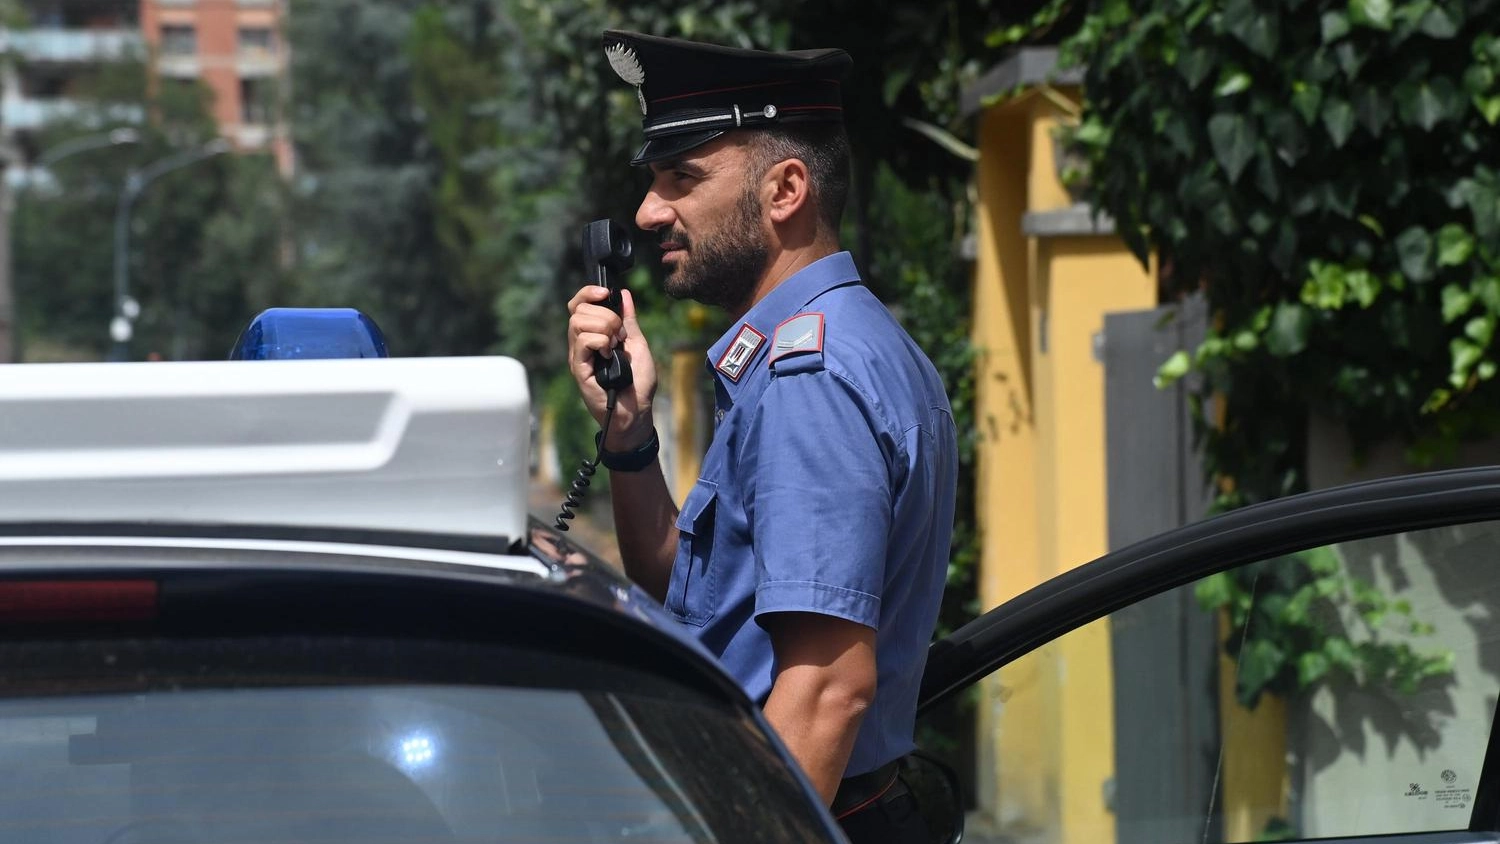 L'uomo è stato trovato dai carabinieri nella sua abitazione di San Giovanni a Teduccio, un quartiere di Napoli